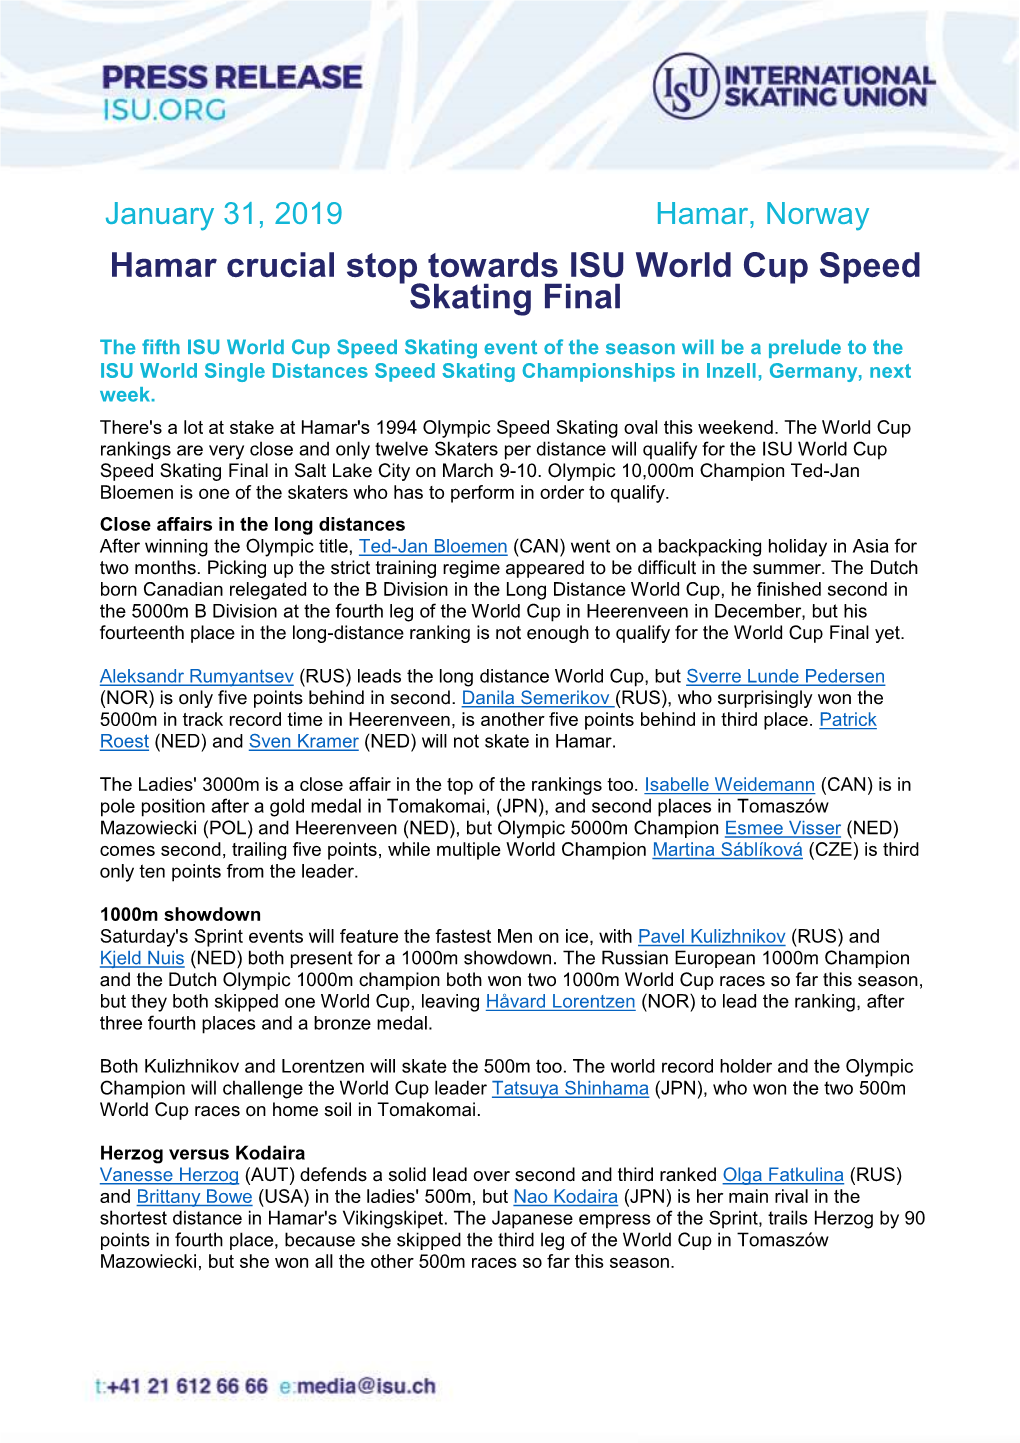 Hamar Crucial Stop Towards ISU World Cup Speed Skating Final